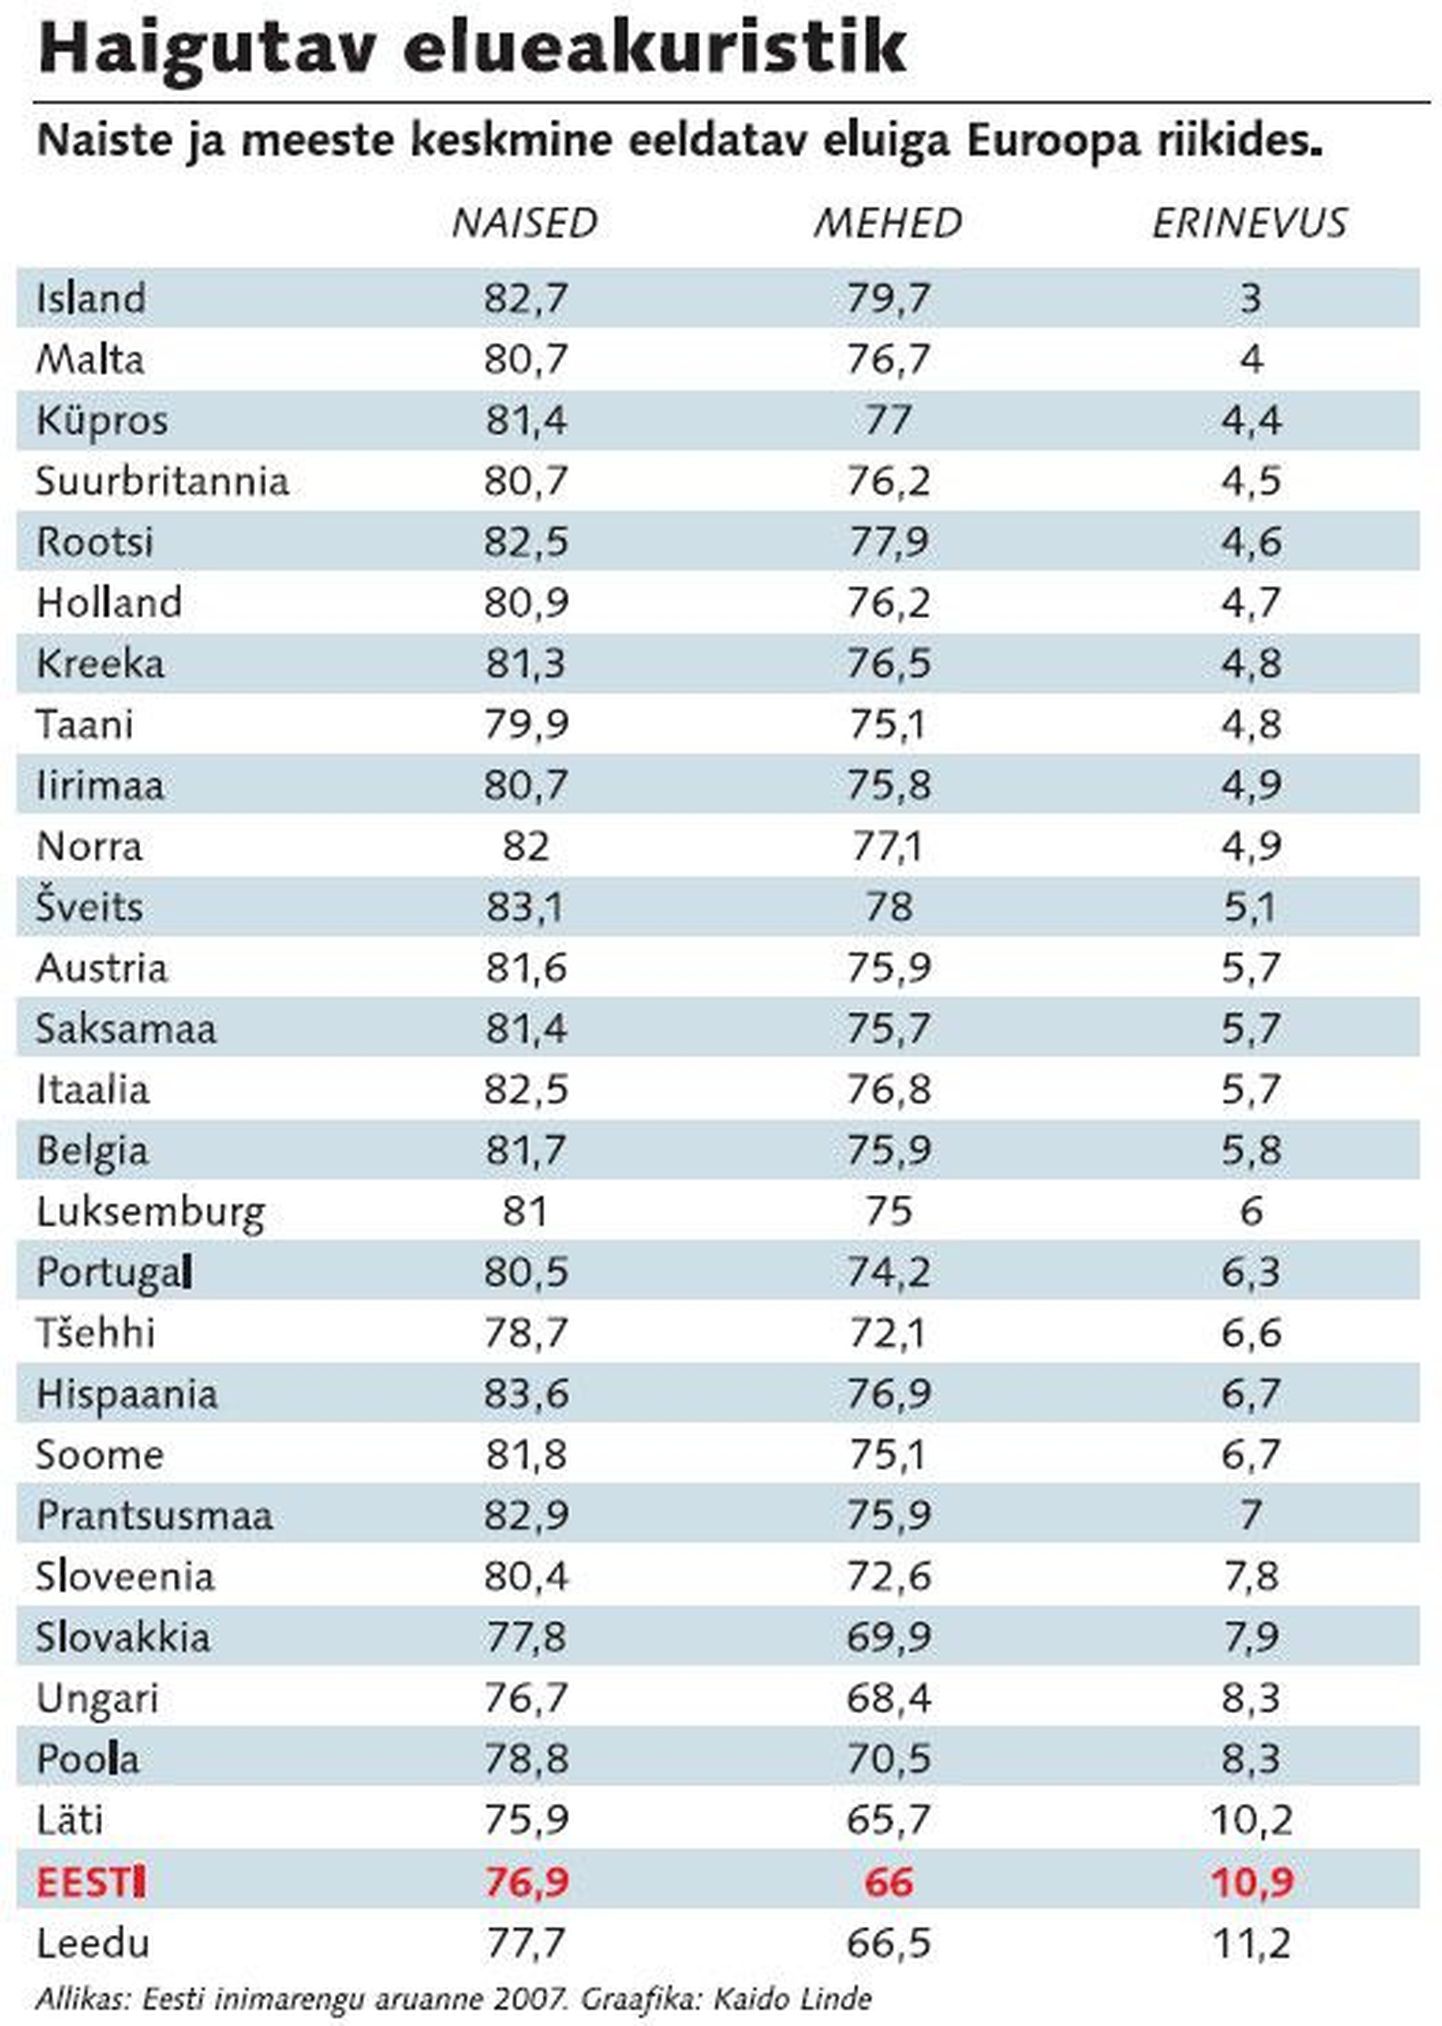 Naiste ja meeste keskmine eeldatav eluiga Euroopa riikides.